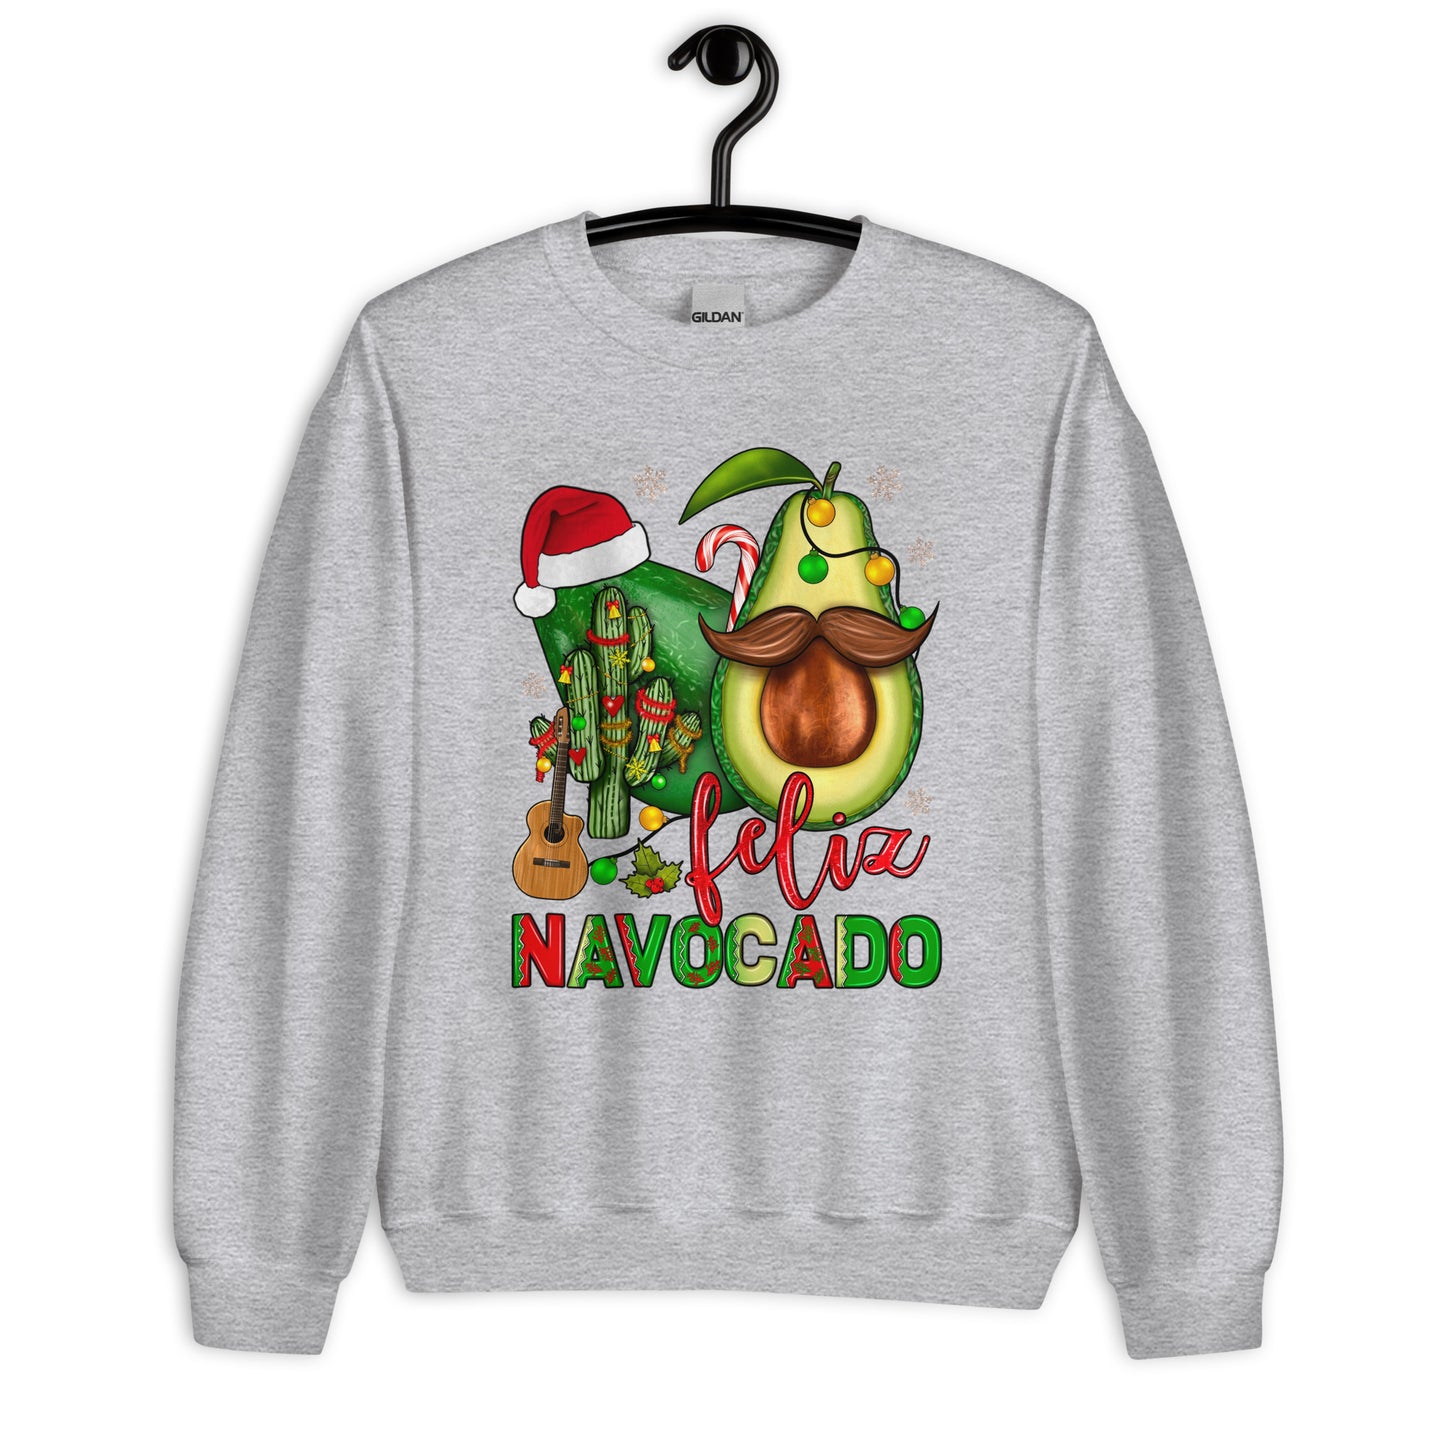 Feliz Navocado Ugly Christmas Sweatshirt